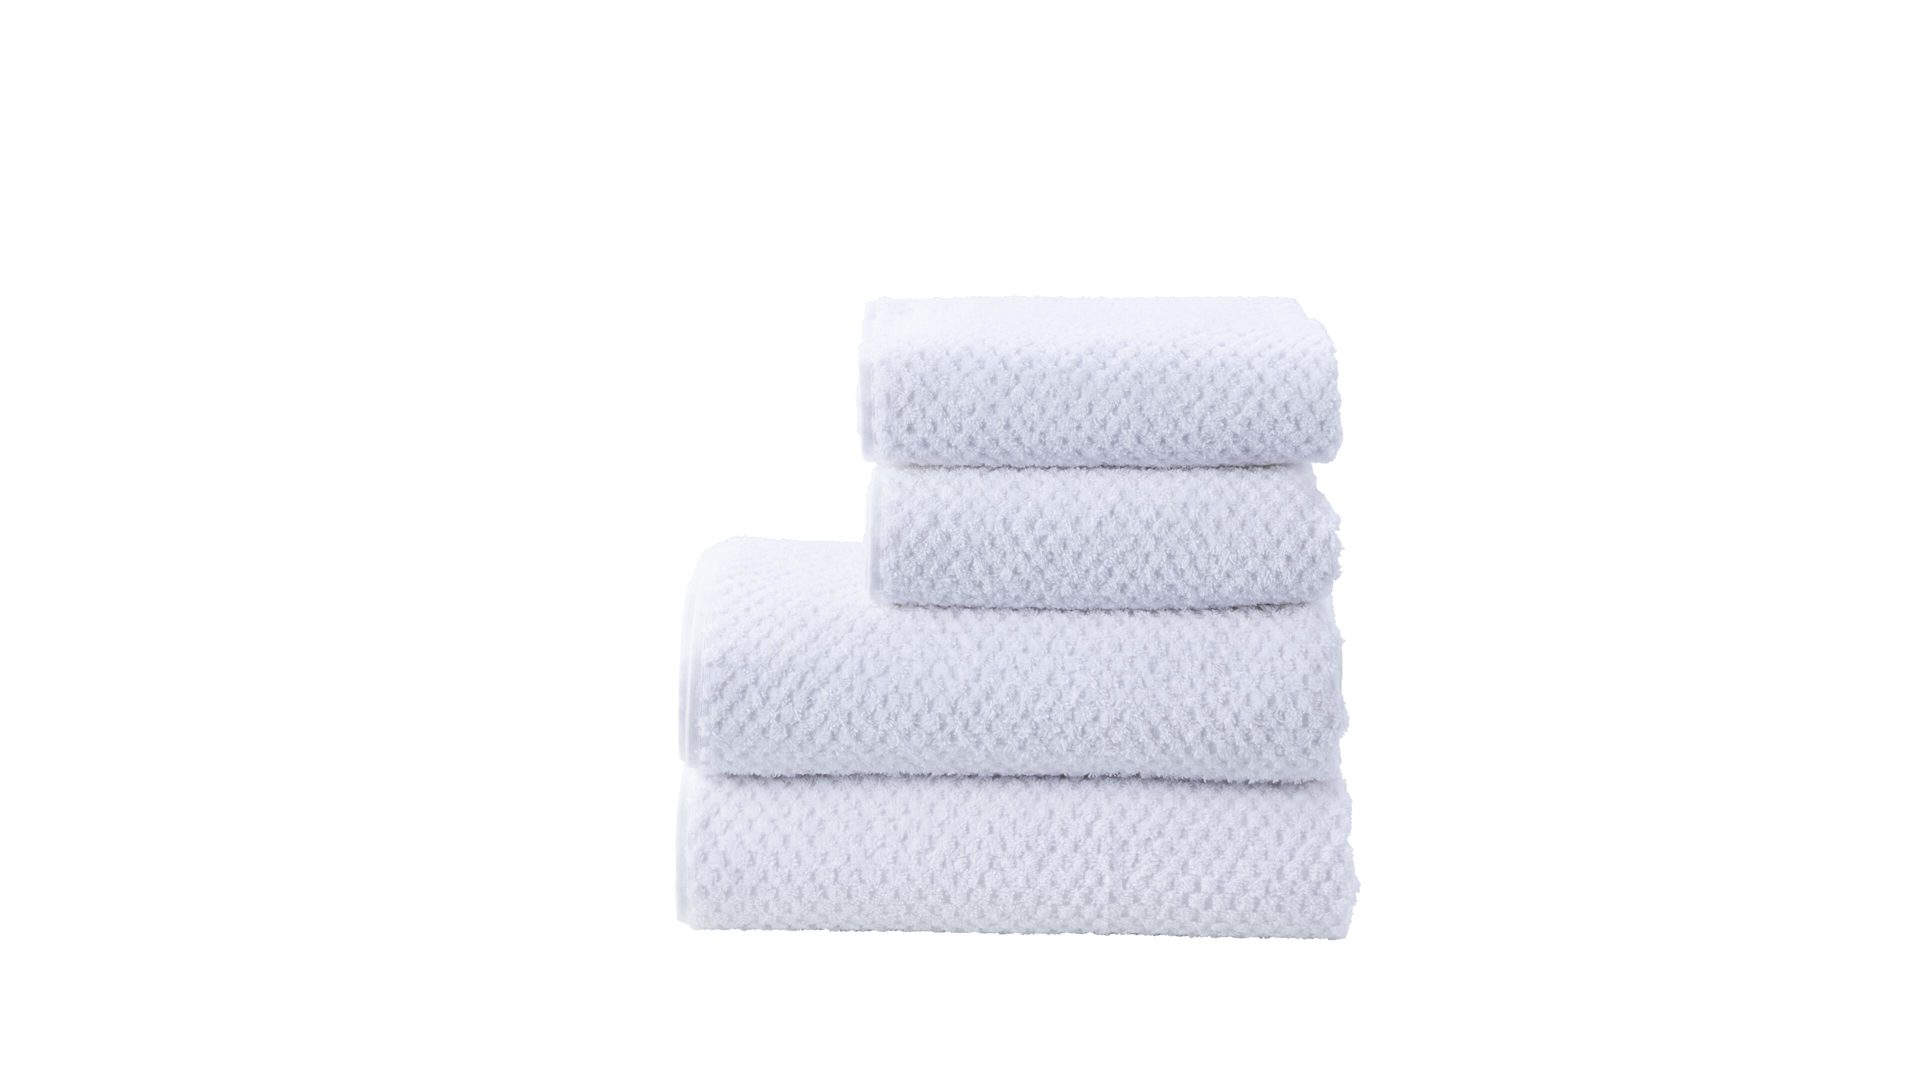 Handtuch-Set Done® be different aus Stoff in Weiß DONE® Handtuch-Set Provence Honeycomb weiße Baumwolle  – vierteilig